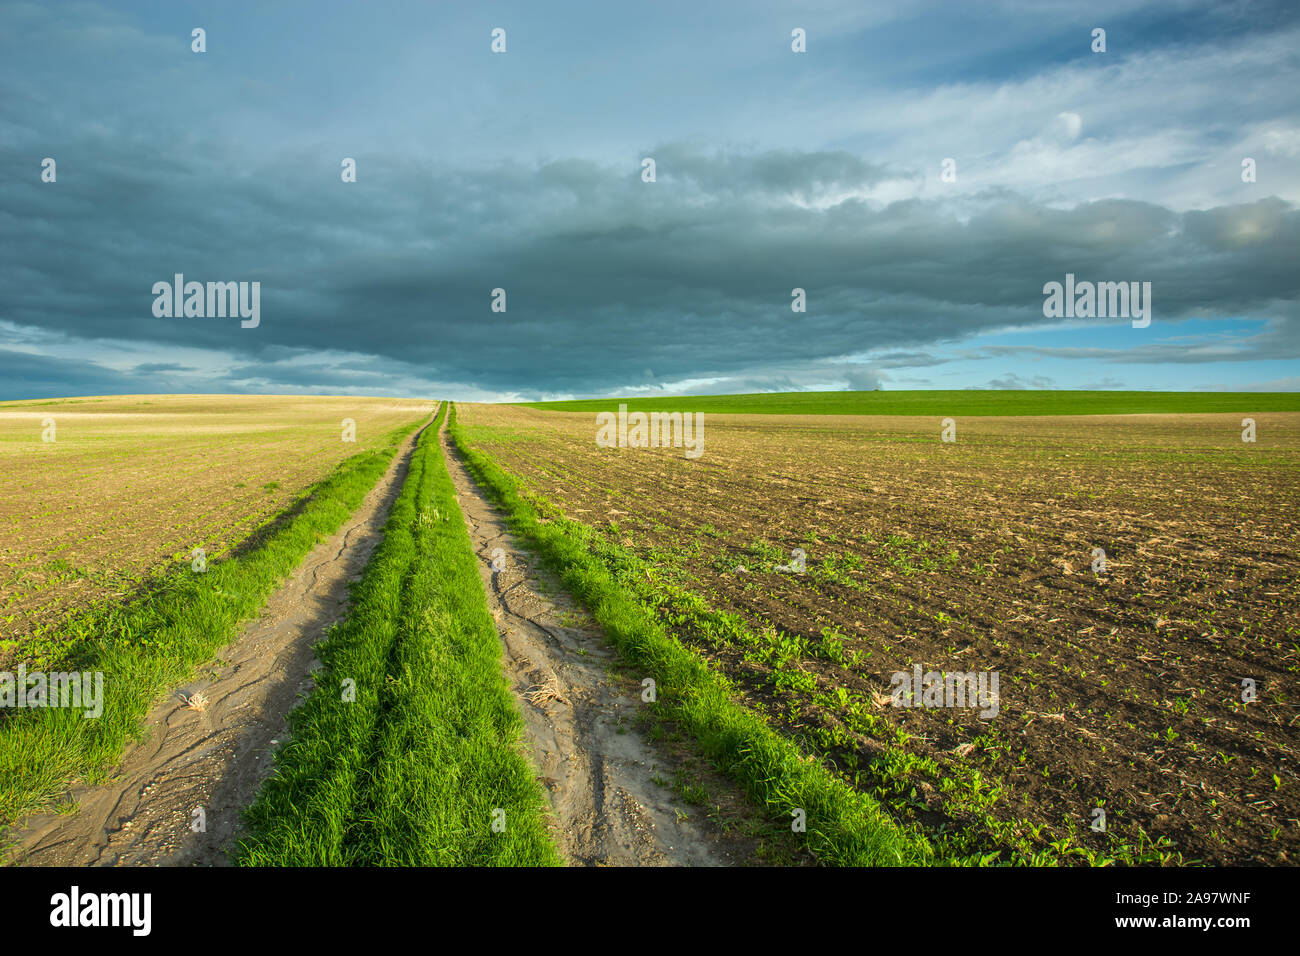 Strada sterrata ricoperta con erba verde e i campi seminati, grigio nuvole nel cielo. Staw, Polonia Foto Stock